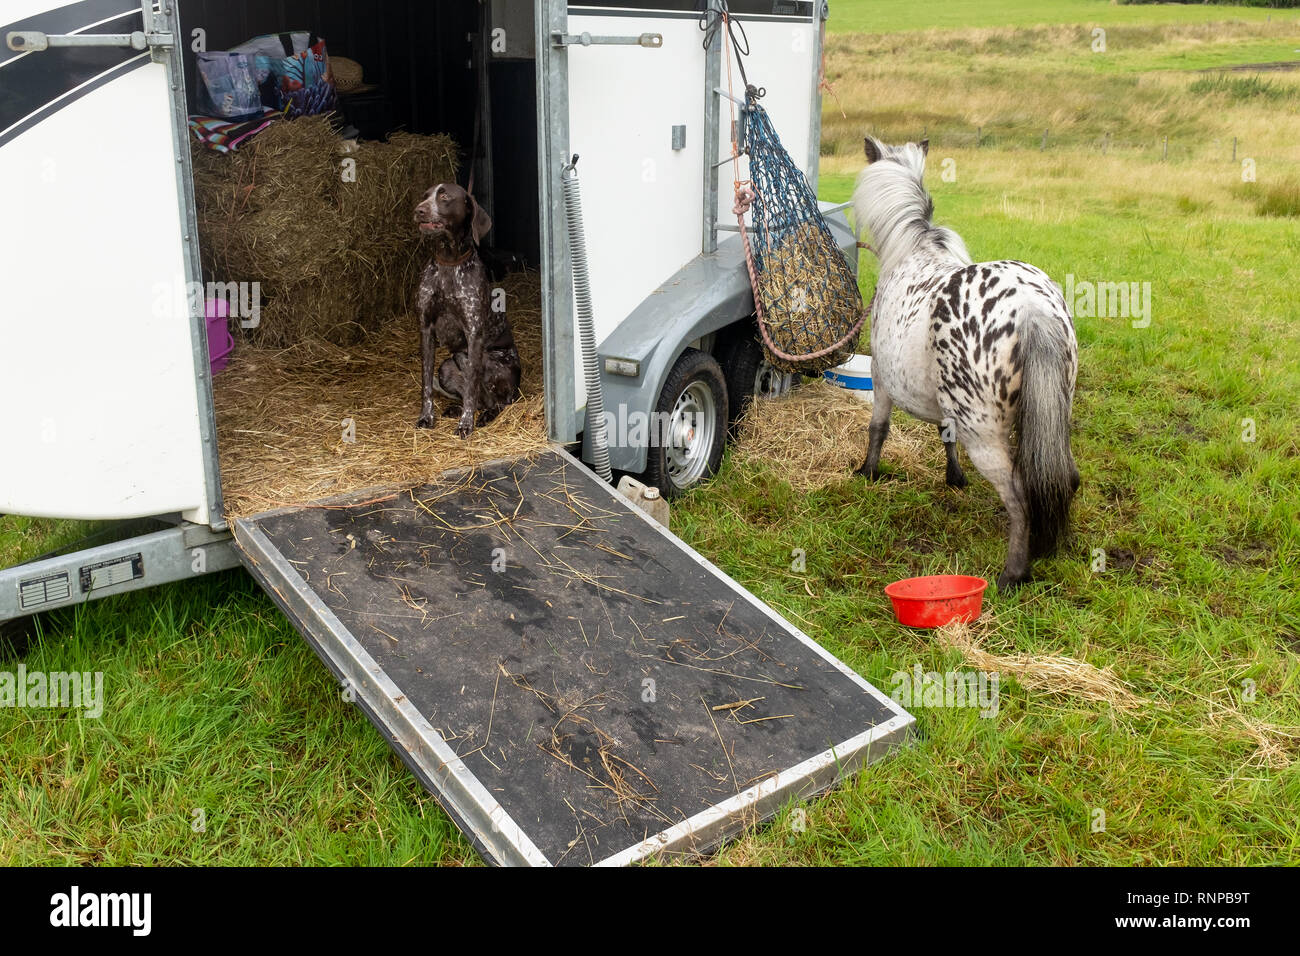 Ein Hund bellt, während im Inneren ein Pferd Box mit offener Tür und  Shetland Pony sitzen außerhalb der lokalen Landwirtschaft zeigen Fort  William Schottland gebunden Stockfotografie - Alamy